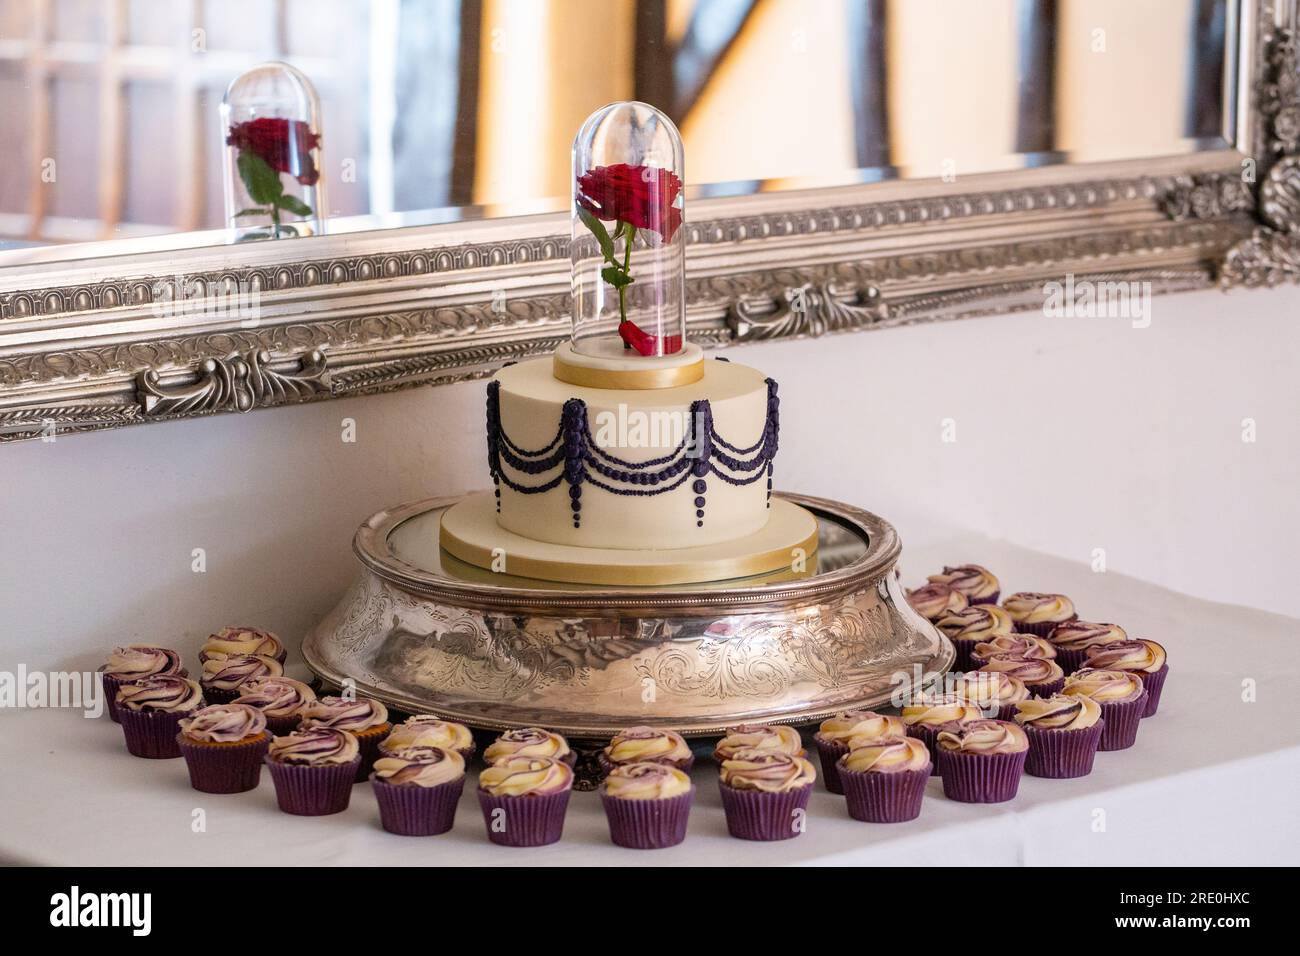 Gâteau de mariage avec une rose rouge dans un bocal en verre, entouré de cupcakes à motifs roses Banque D'Images